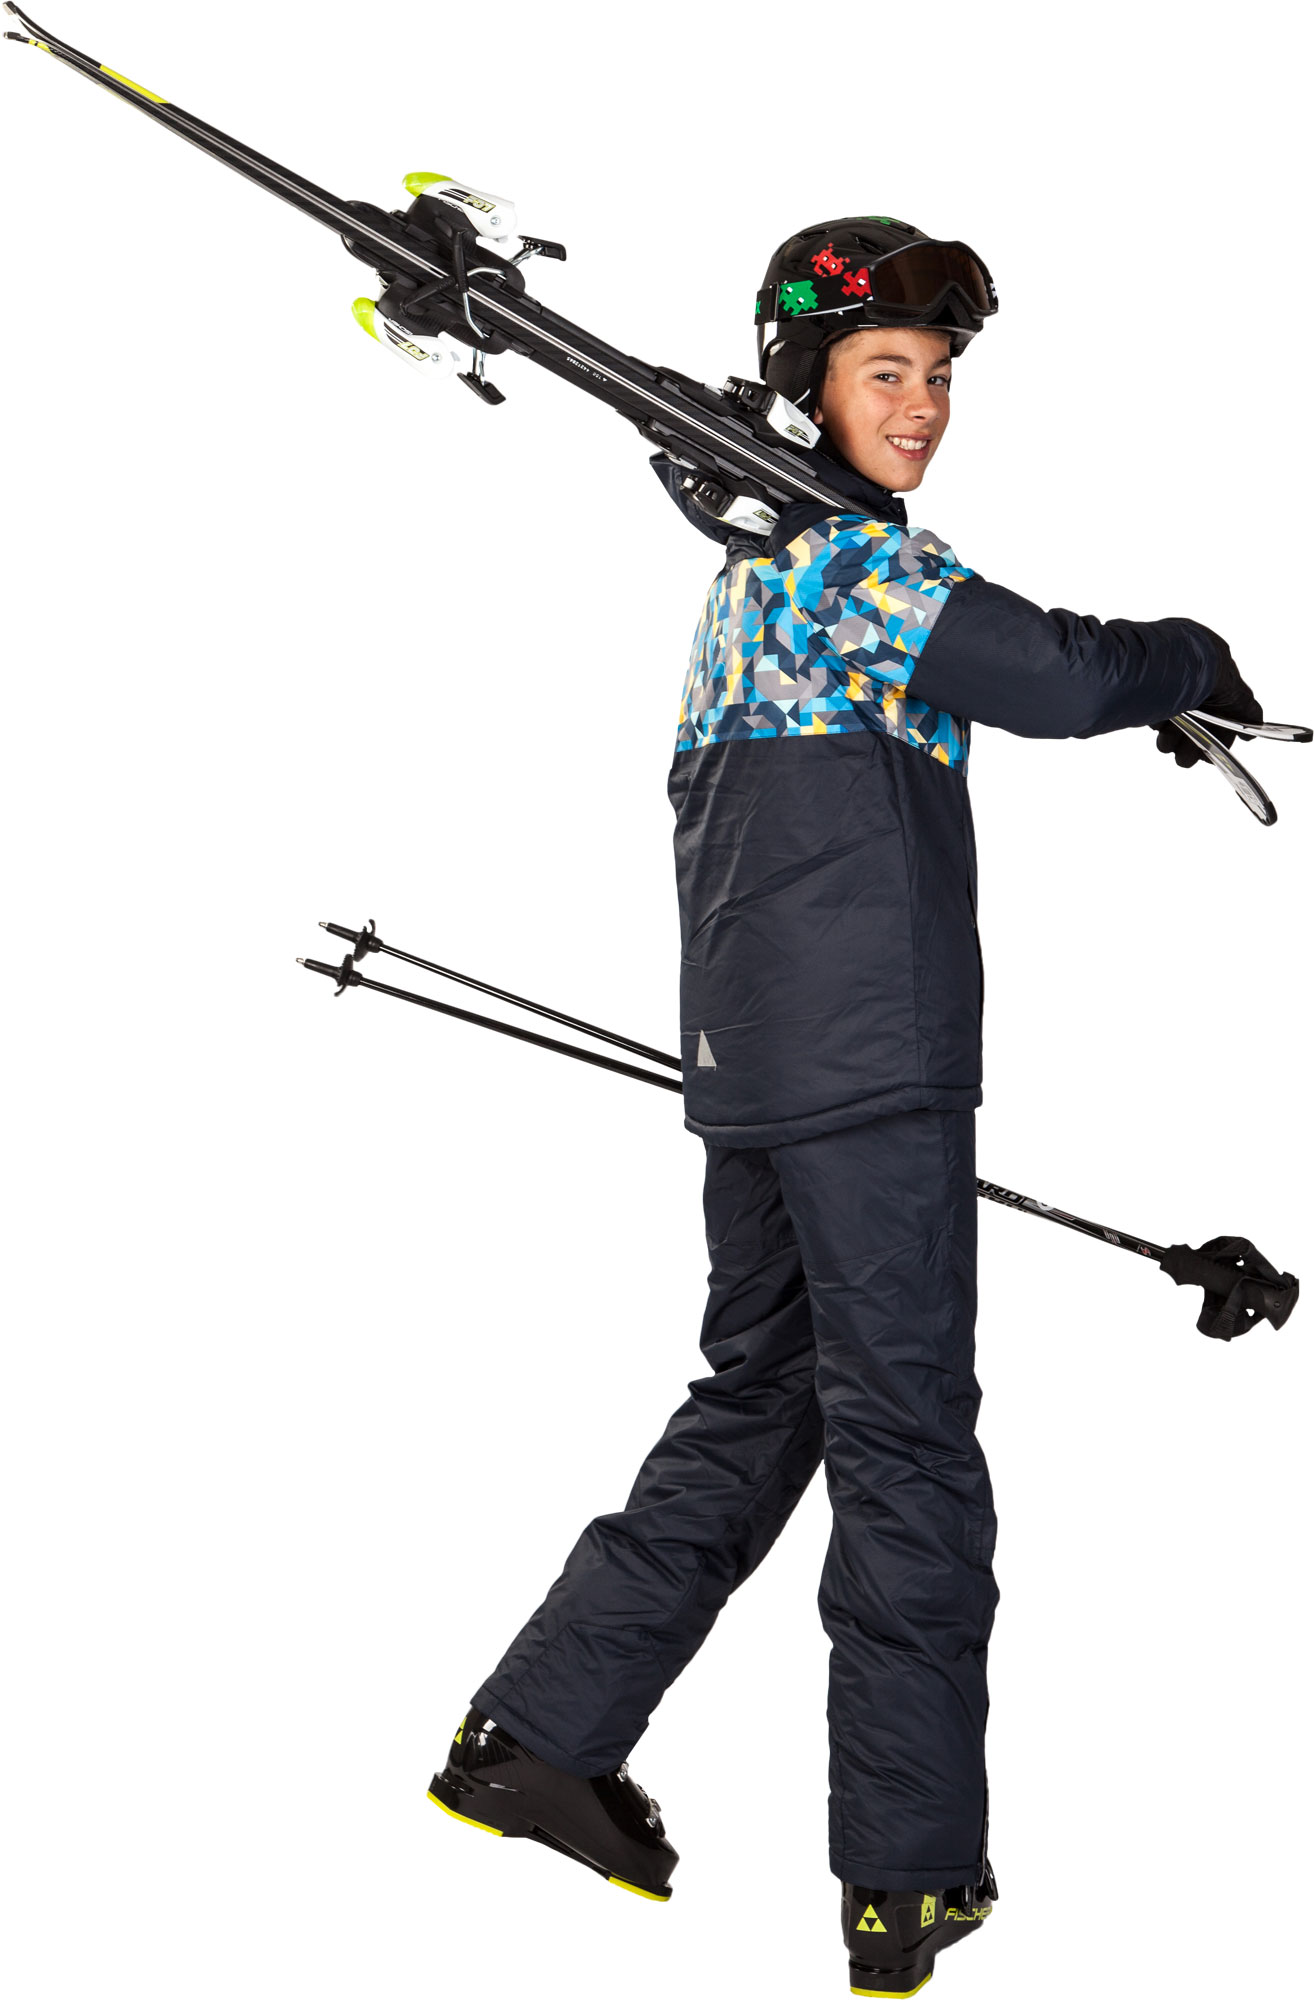 Chlapecká lyžařská bunda